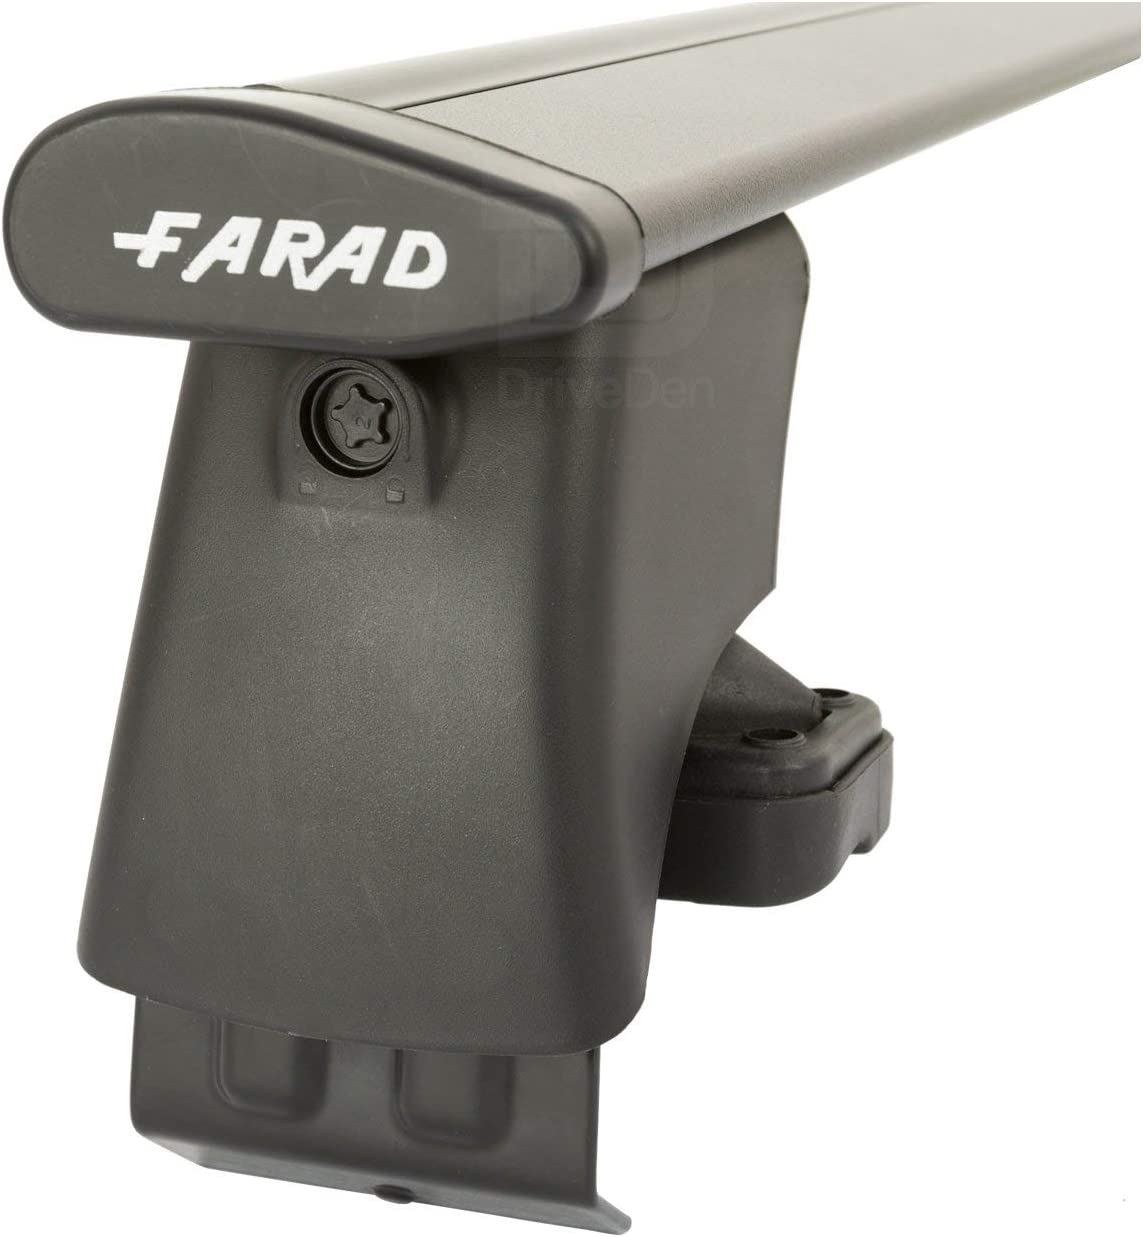 FARAD-Kit H2 per barre portatutto - Citroen C4 2010-2019 (senza corrimano)